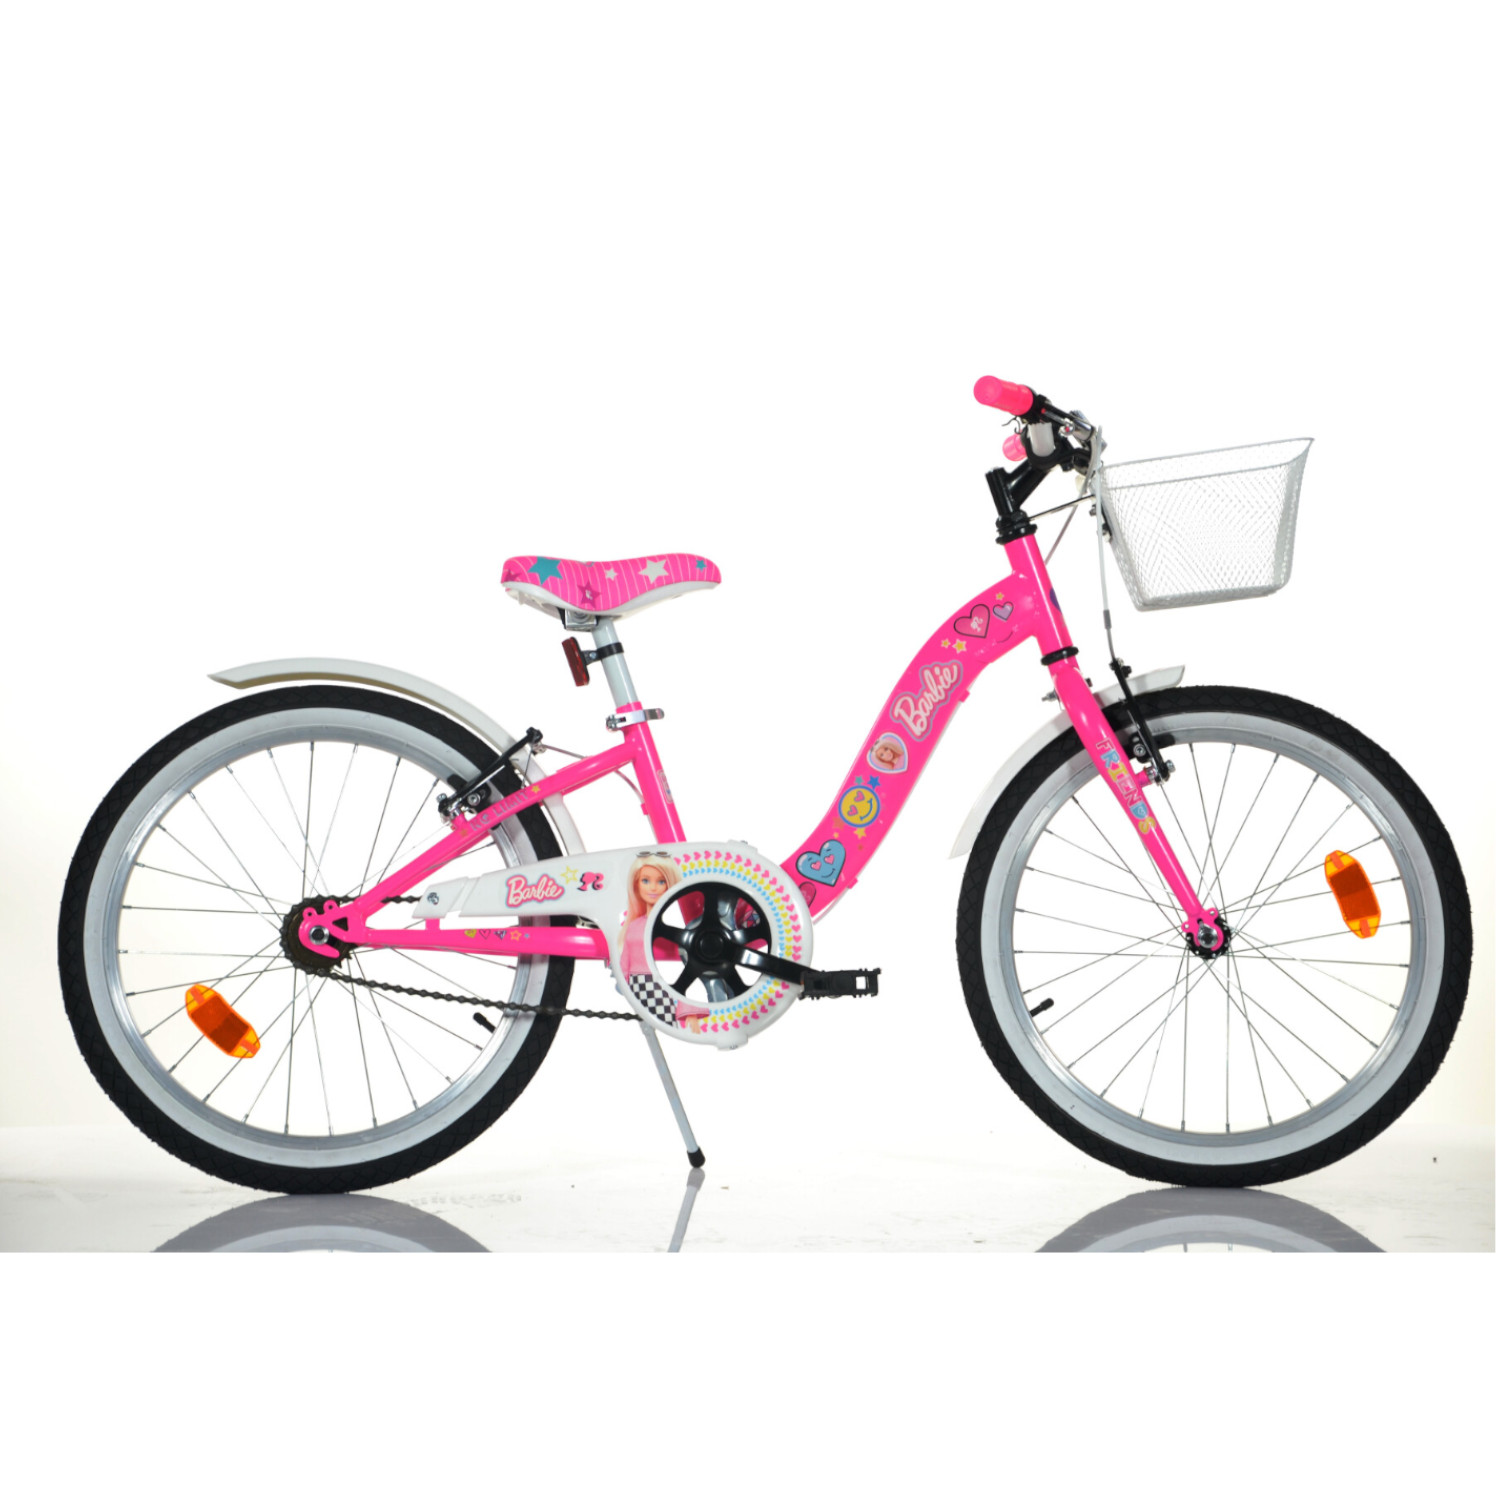 Bicicletta per bambine  modello barbie misura 20 pollici - Barbie